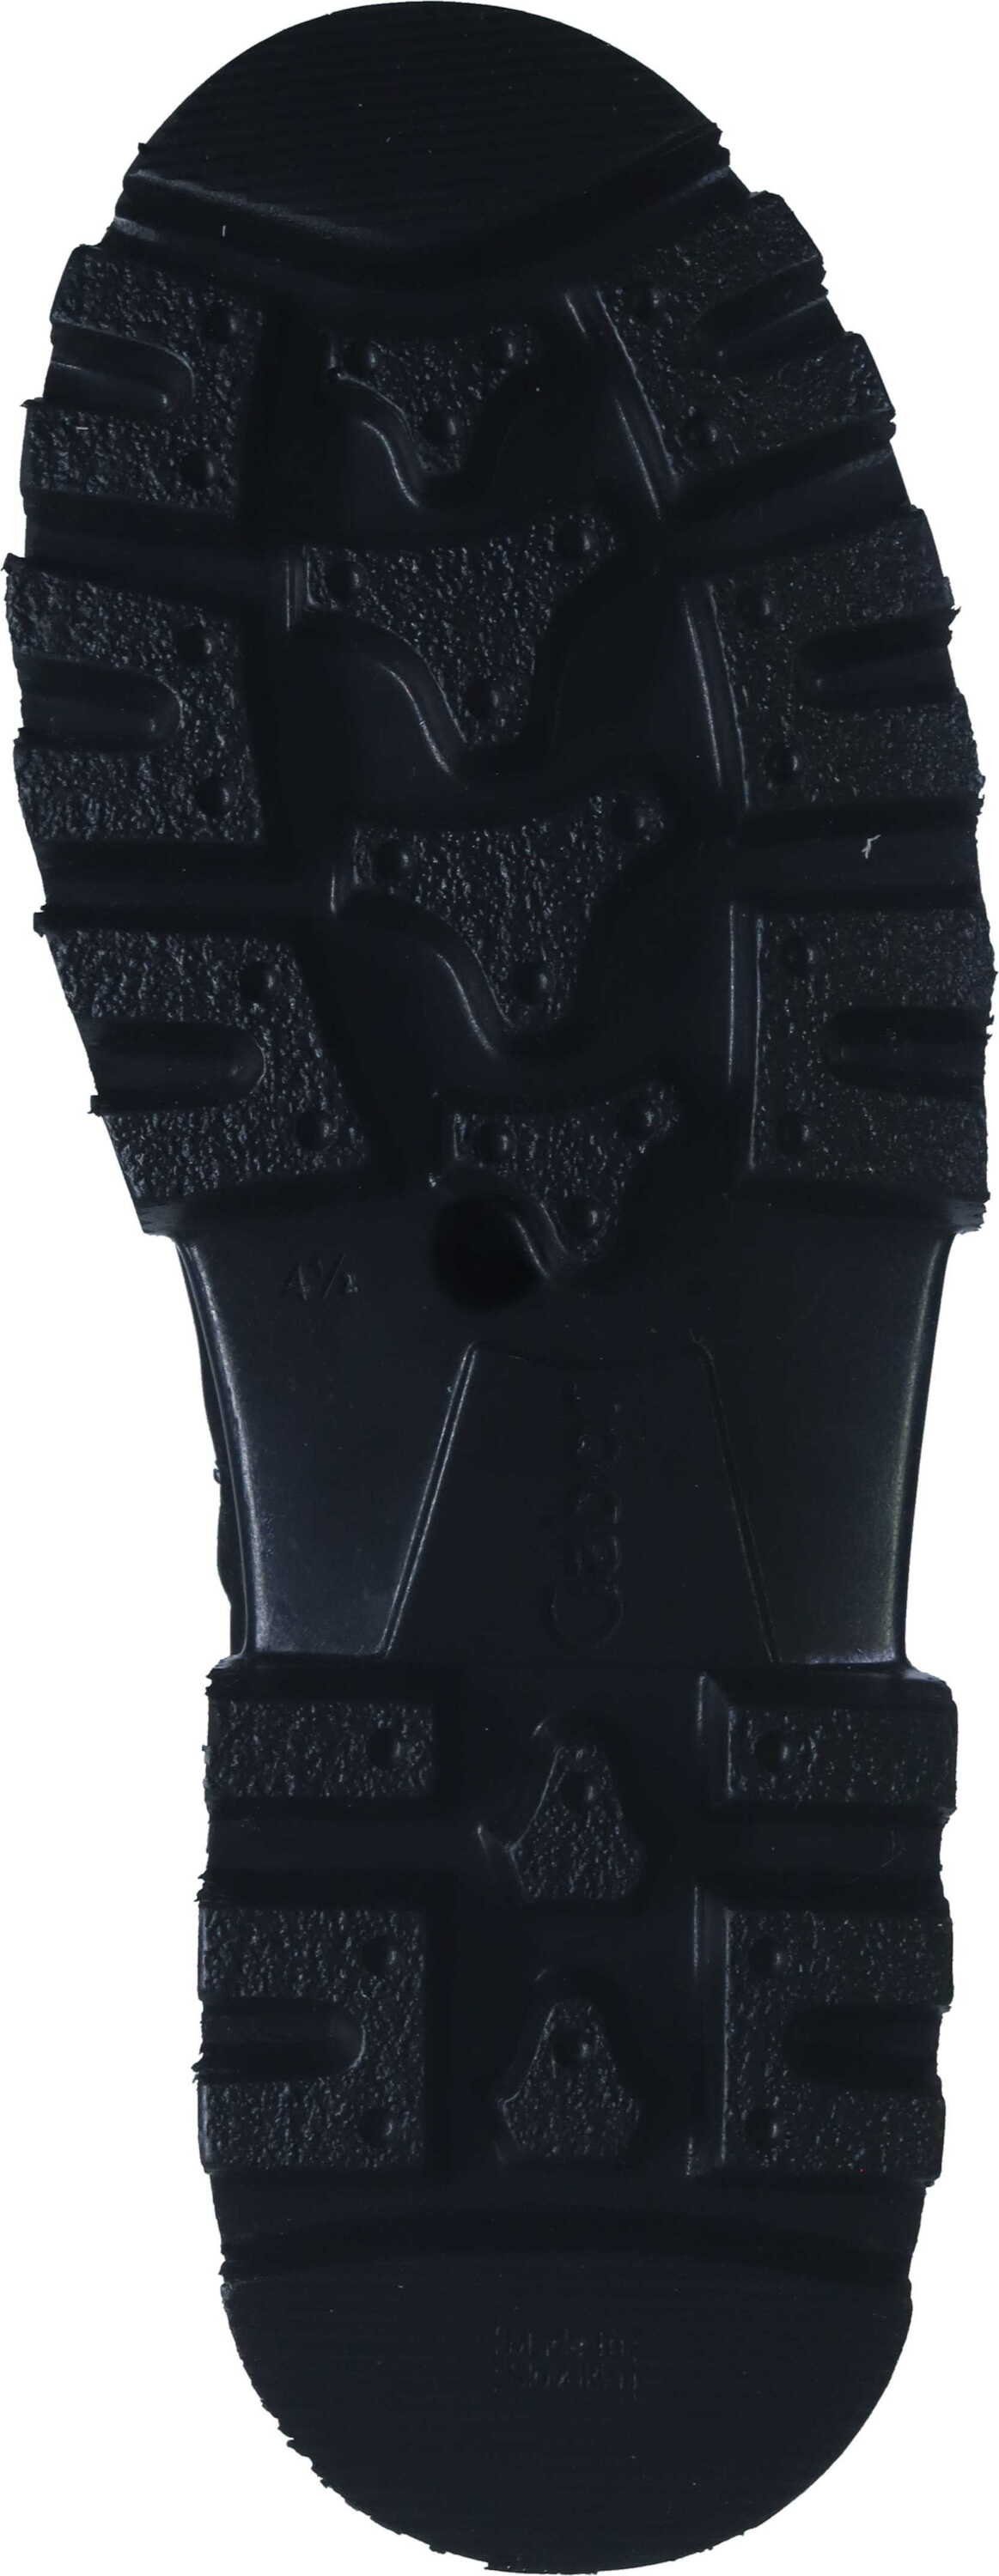 Stiefeletten aus schwarz Stiefelette Gabor Nubukleder